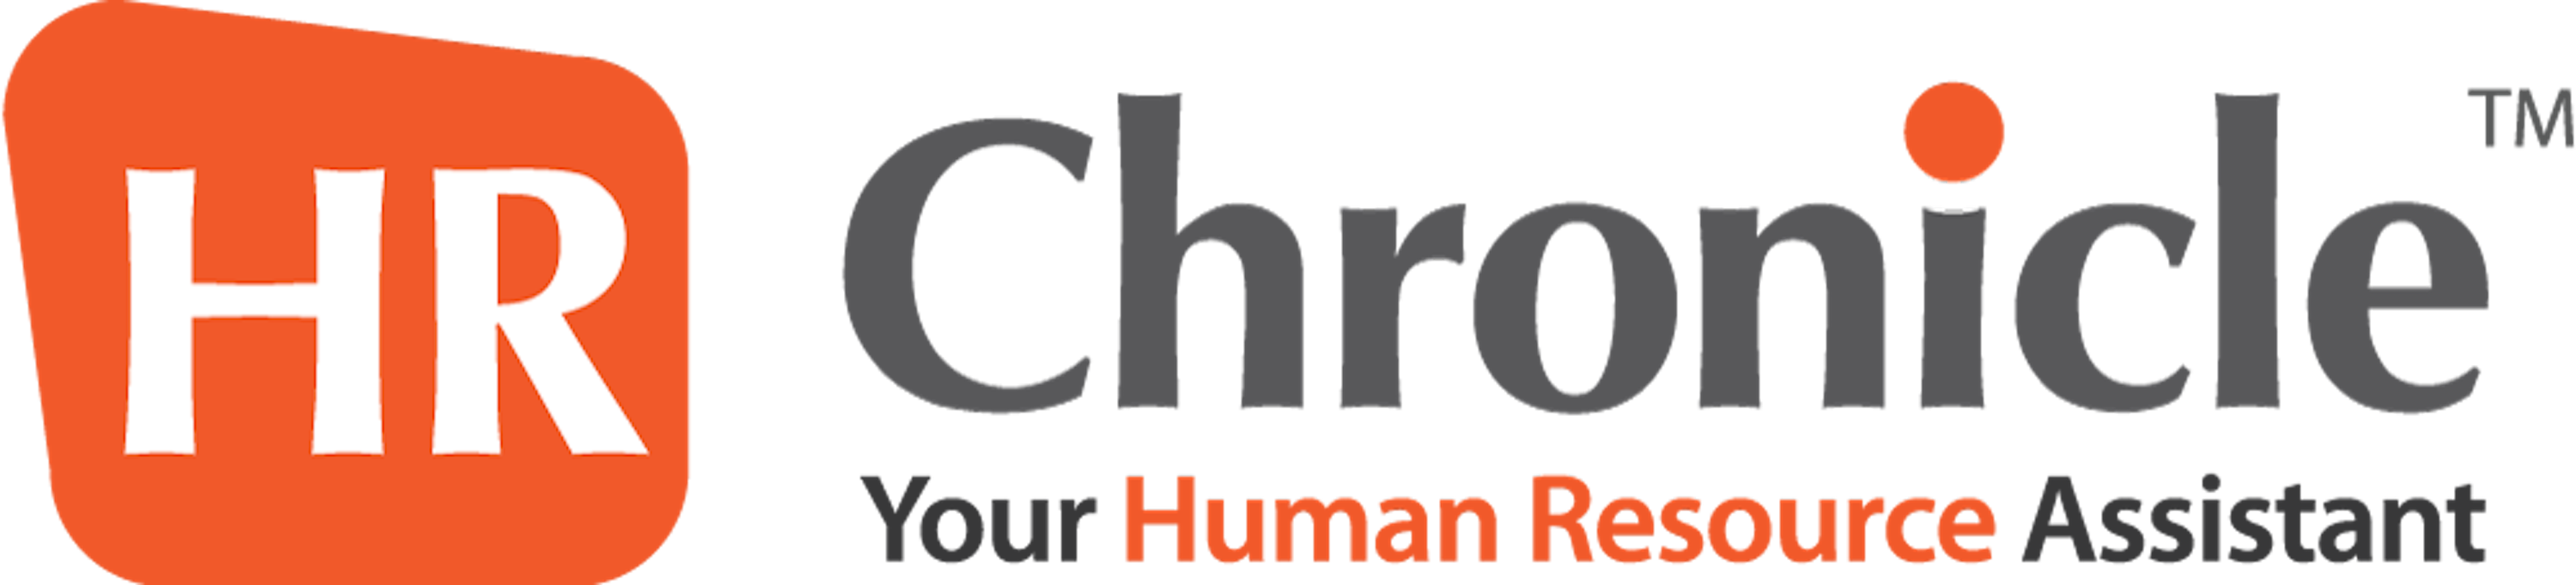 HR Chronicle Logo